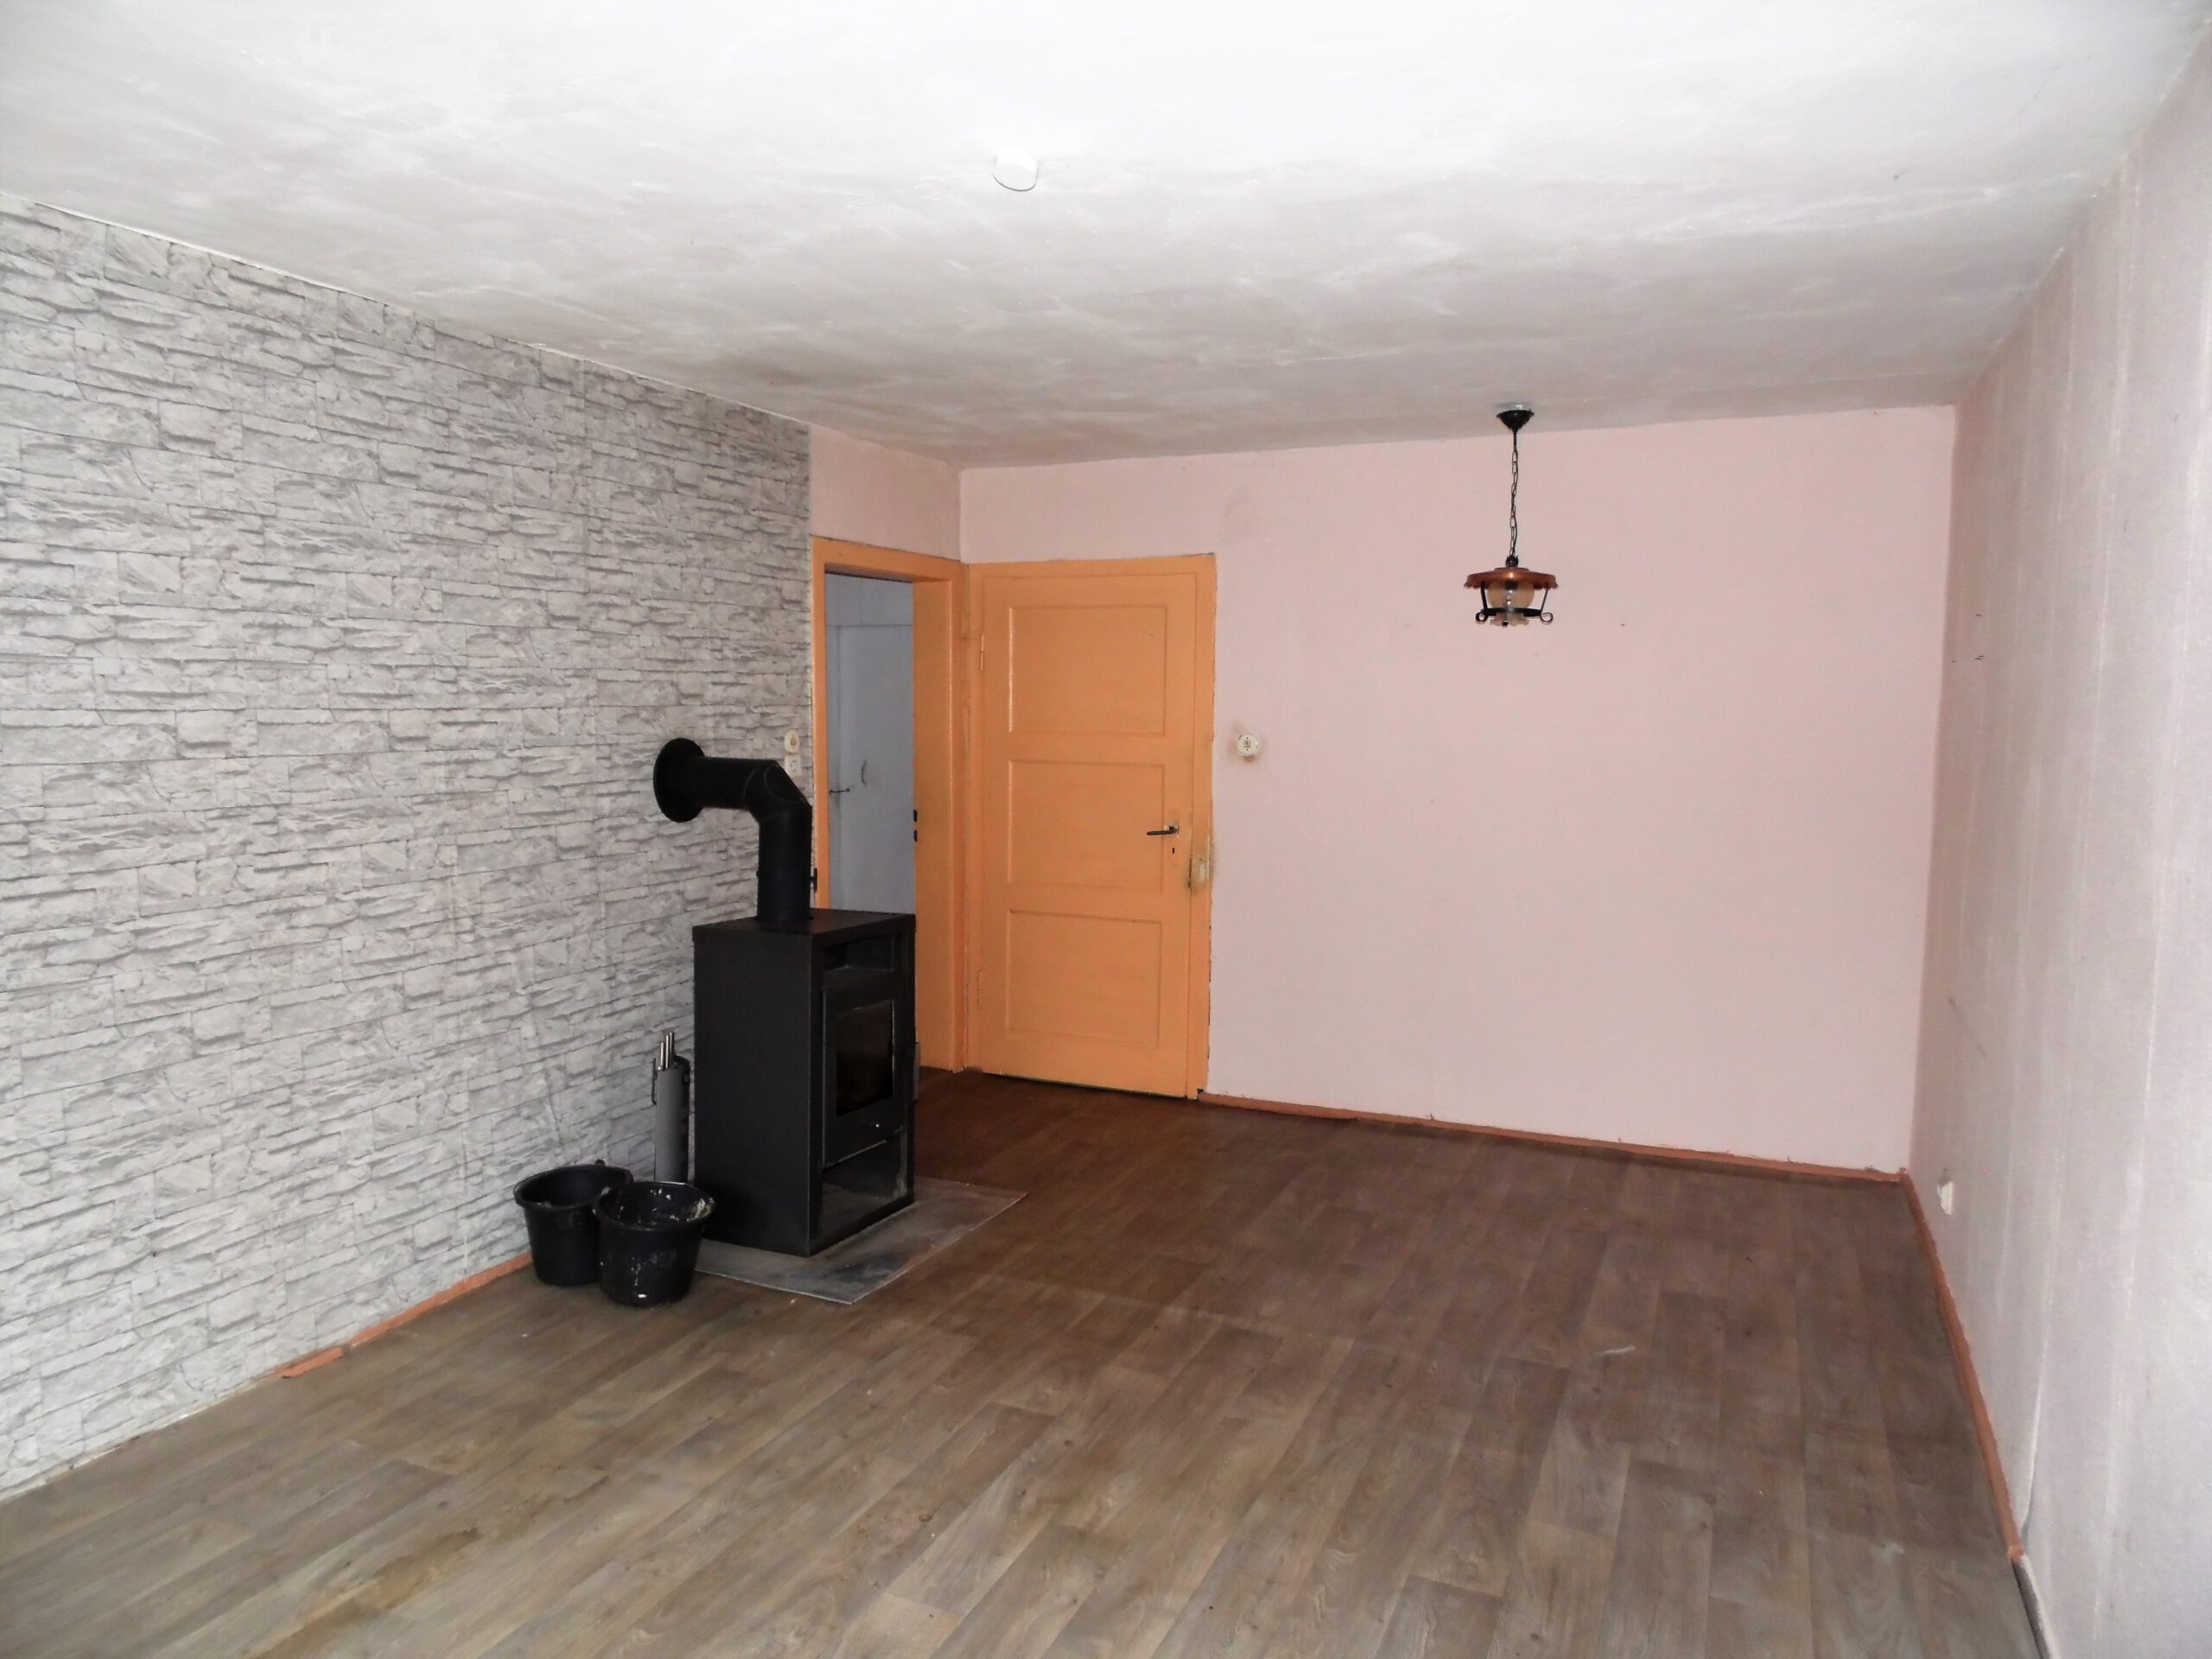 Einfamilienhaus Lennewitz - Wohnzimmer mit Kaminofen